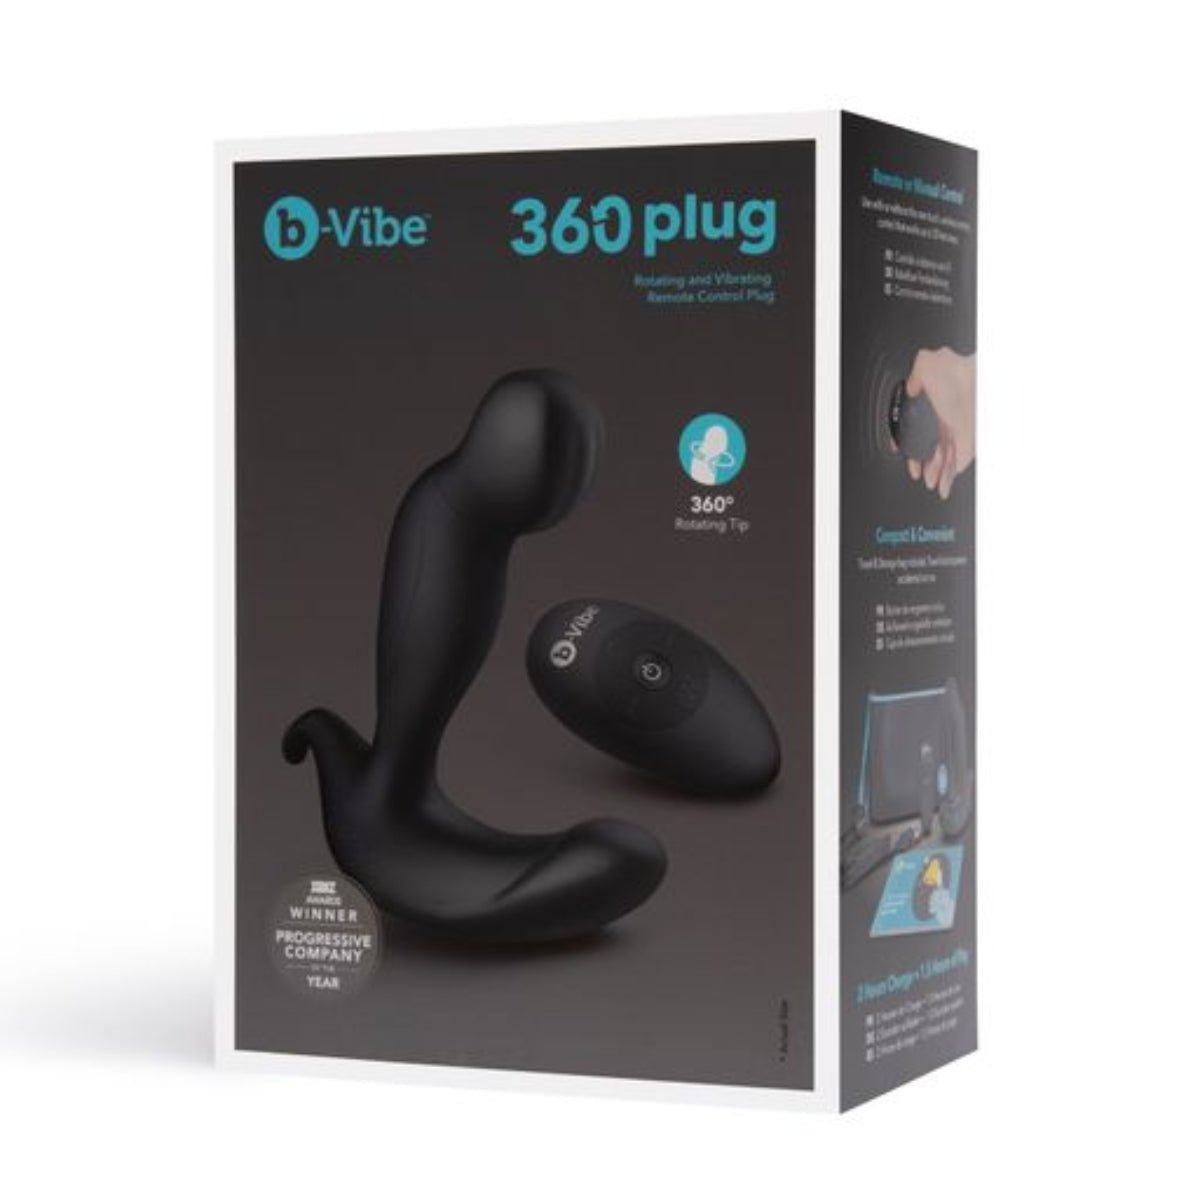 Vibrating Butt Plugs B-vibe 360 Plug   